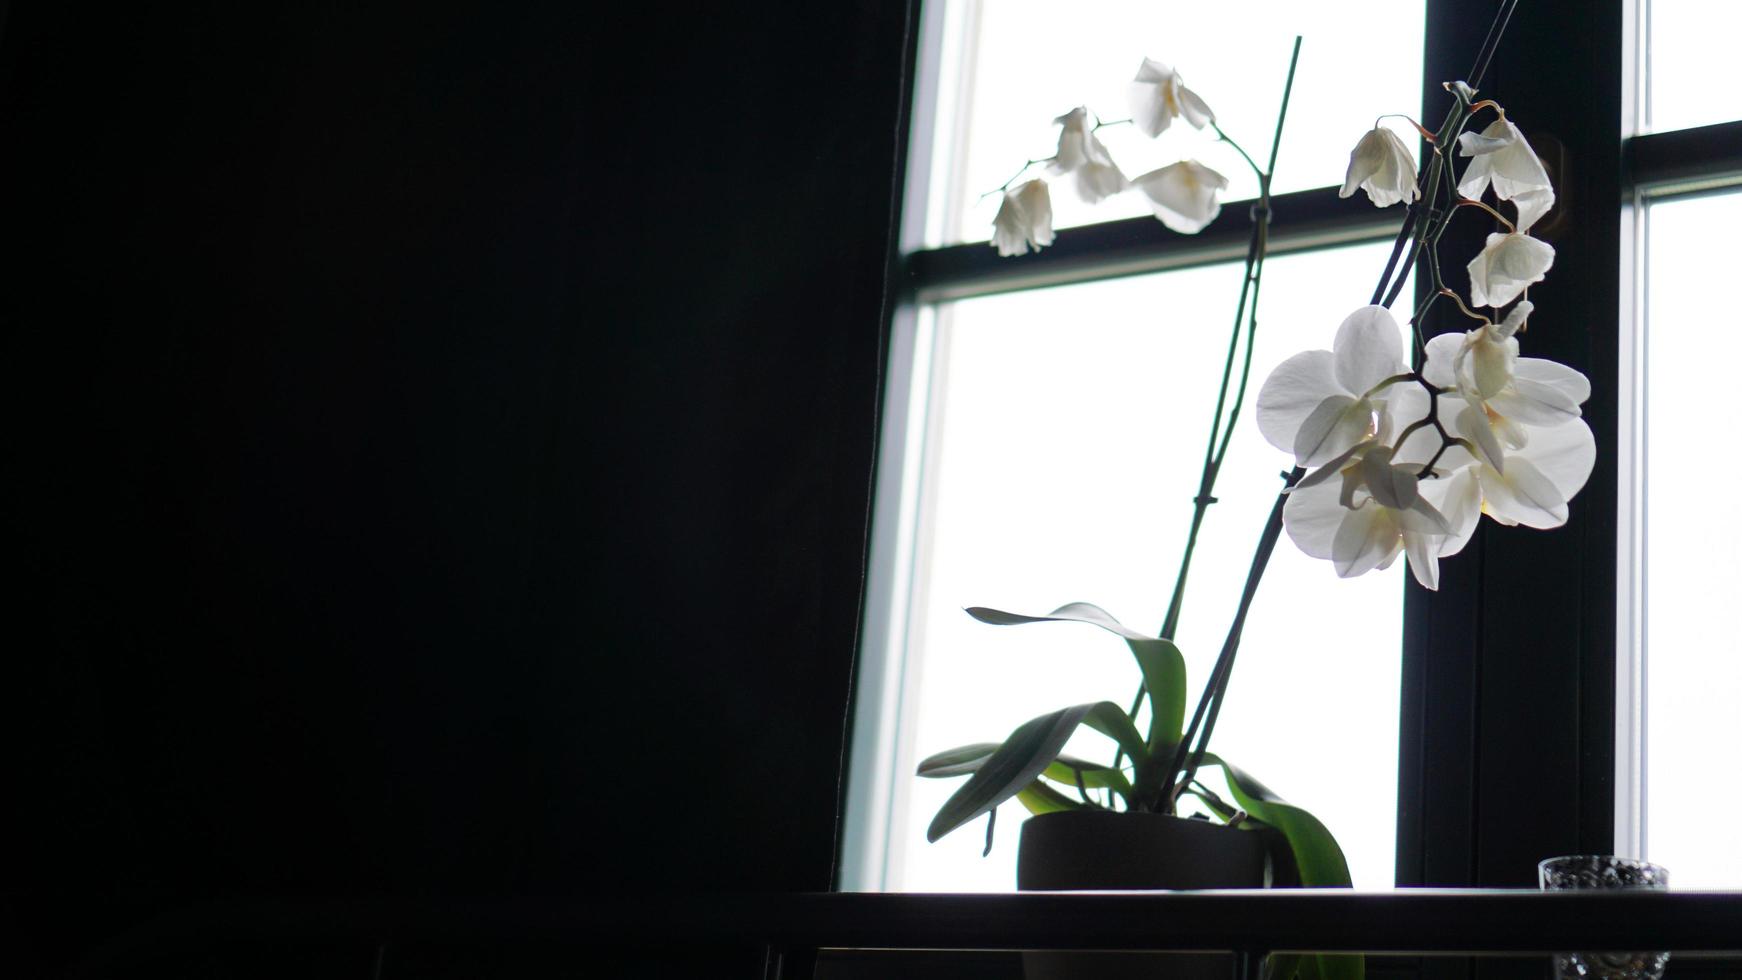 blomkruka nära ett stort fönster. vit orkidé på fönsterbrädan foto